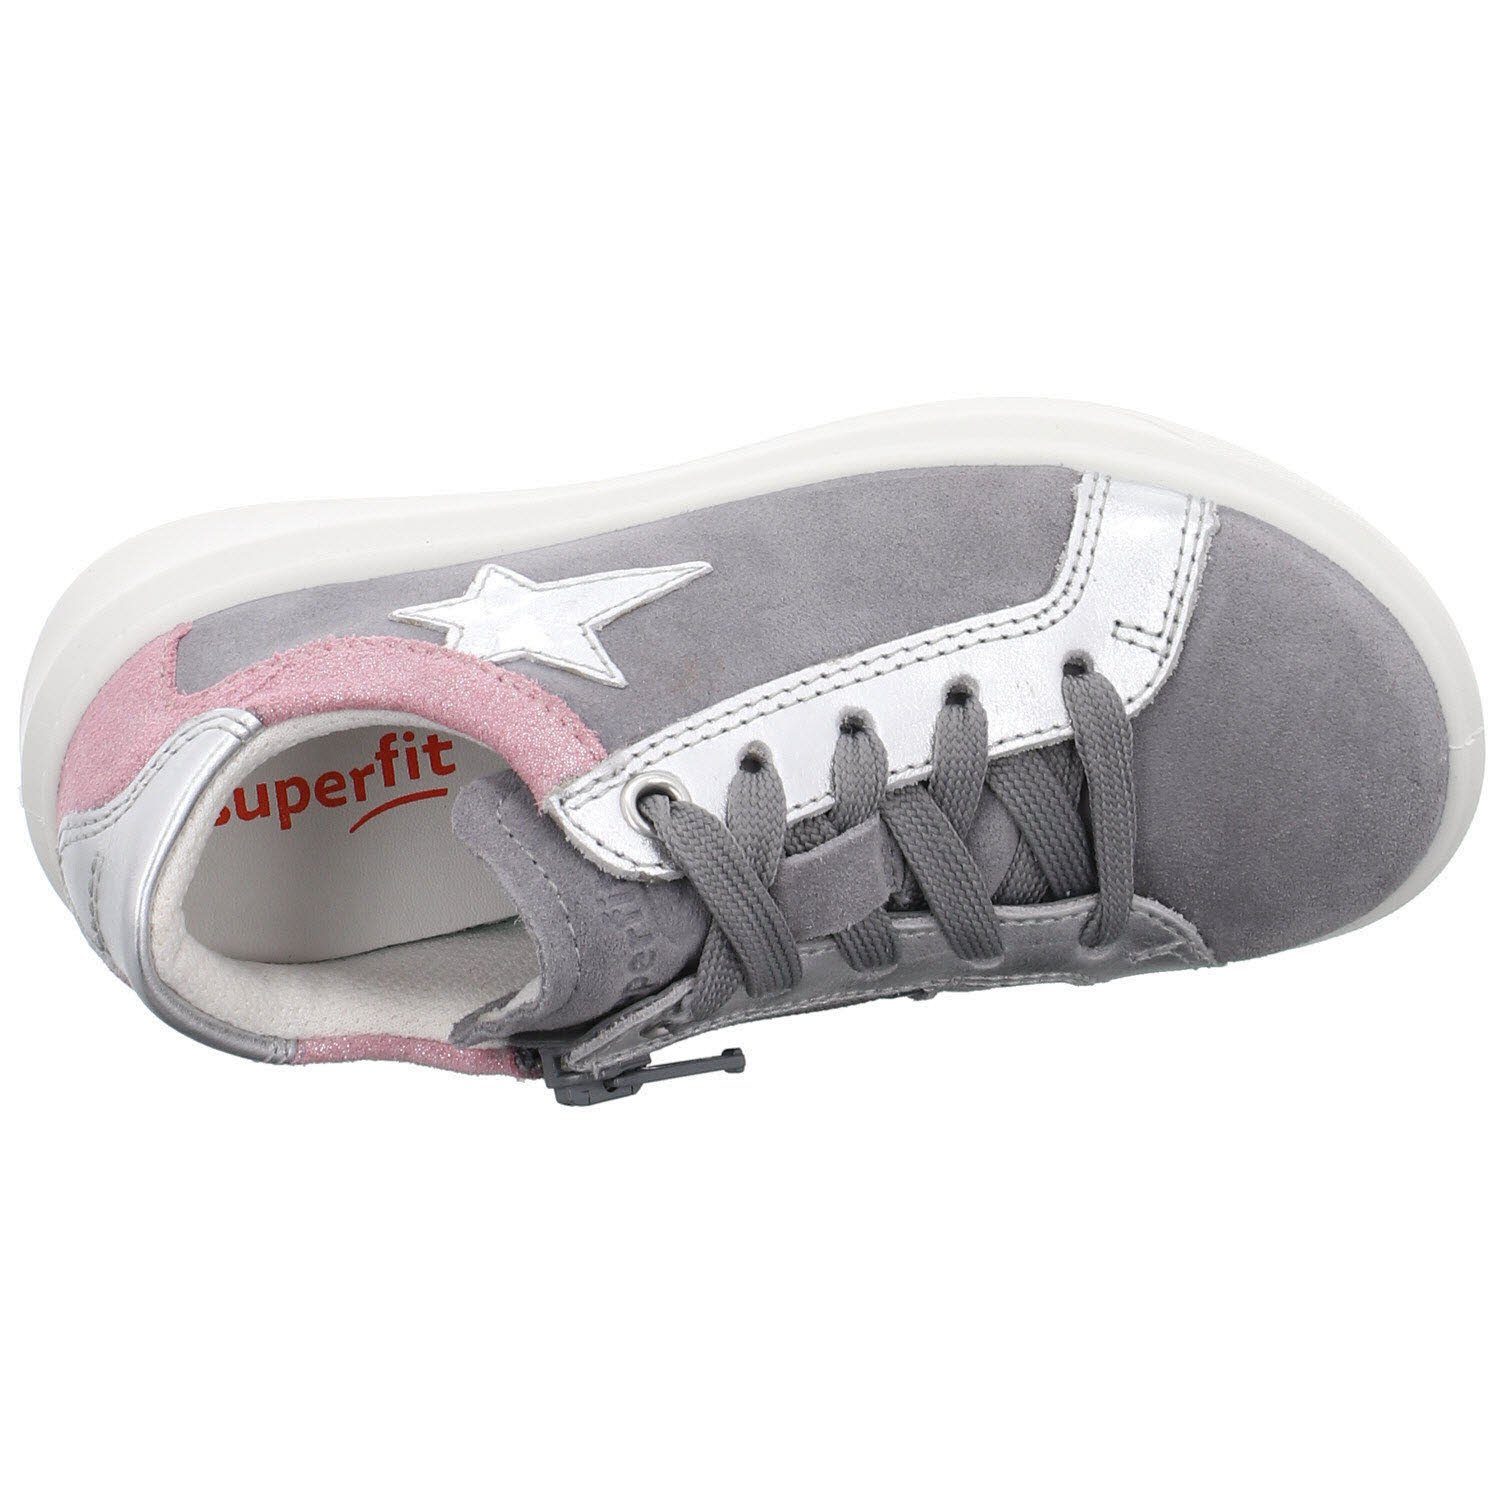 Cosmo Superfit Schnürung Schnürschuh (20401860) Kinderschuhe HELLGRAU/ROSA Schnürschuh Schuhe